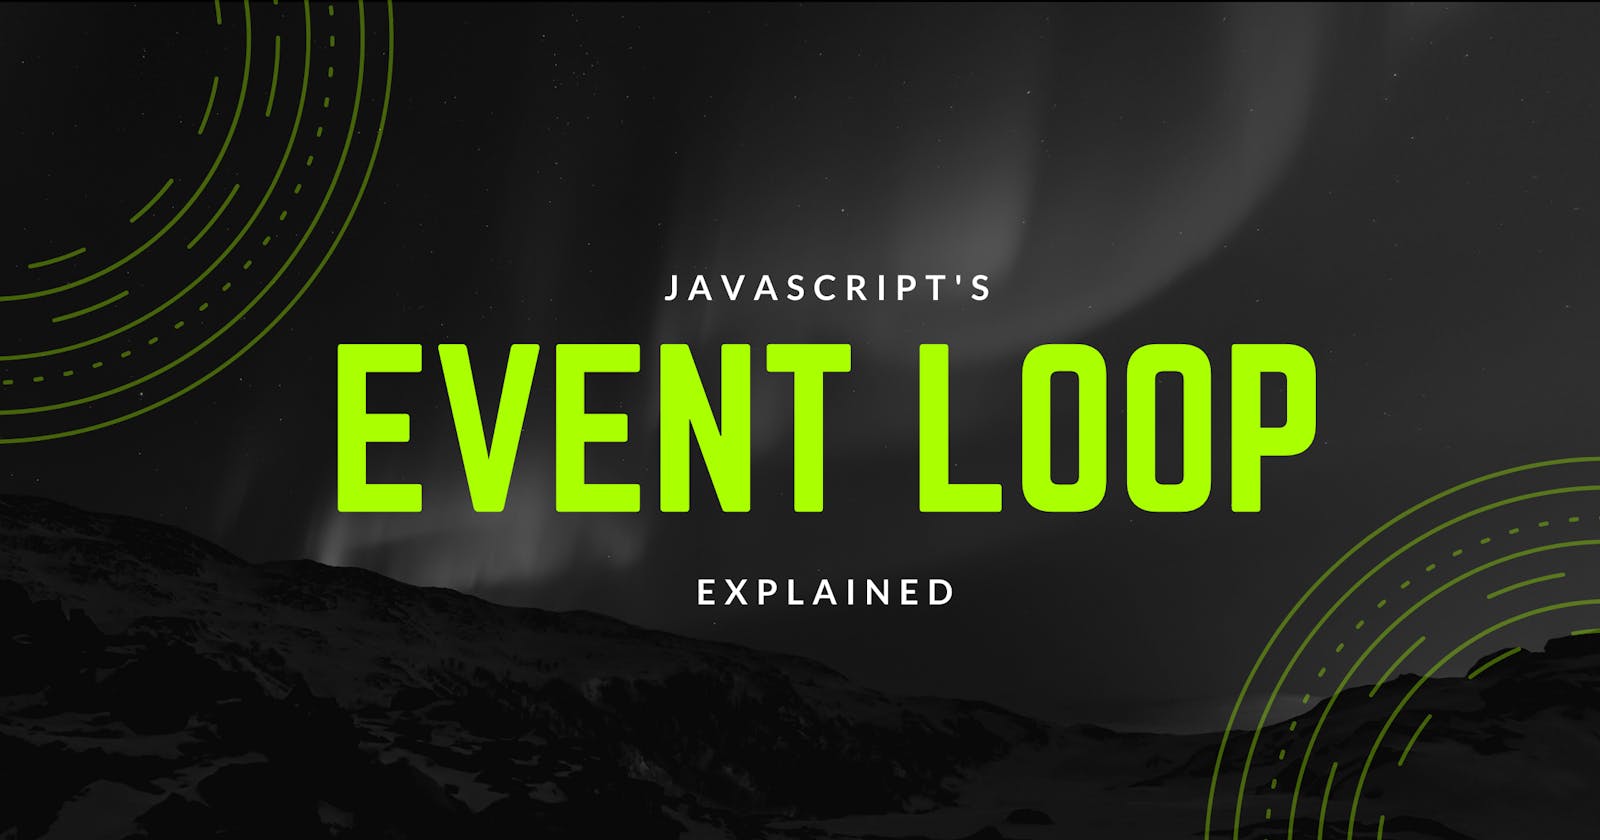 What is Event Loop in JavaScript?